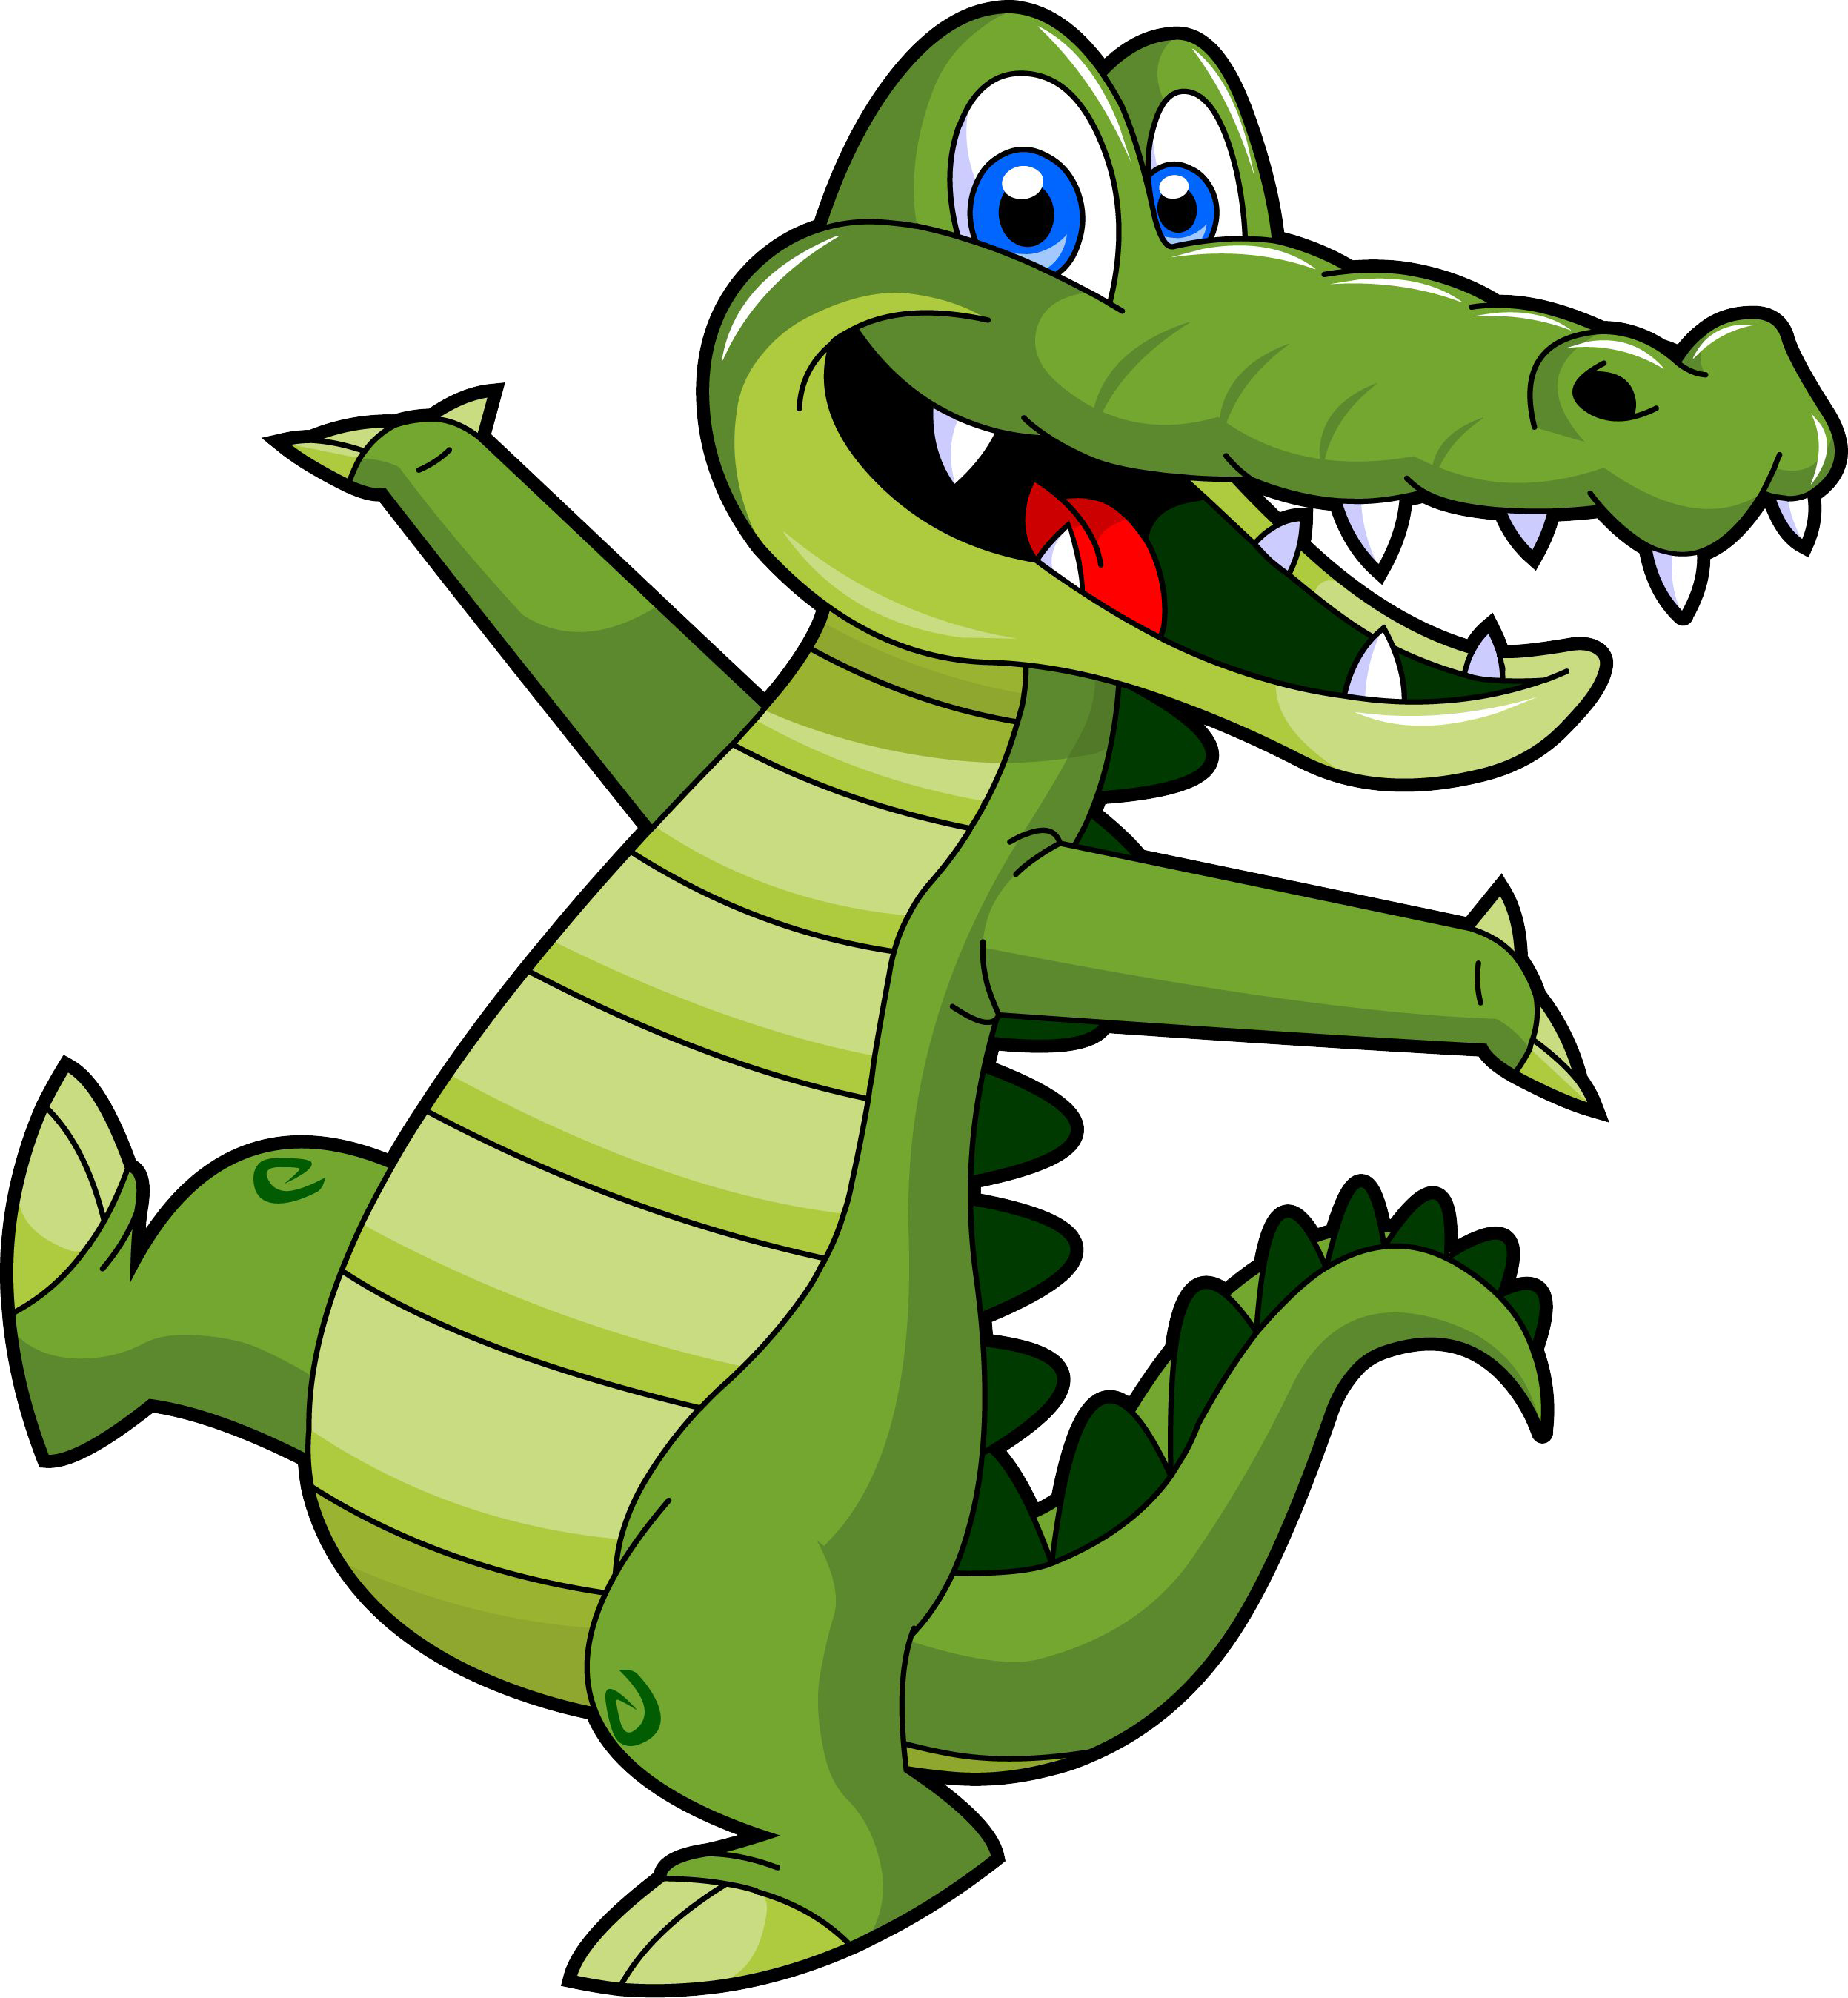 Download PNG image - Alligator PNG Image 